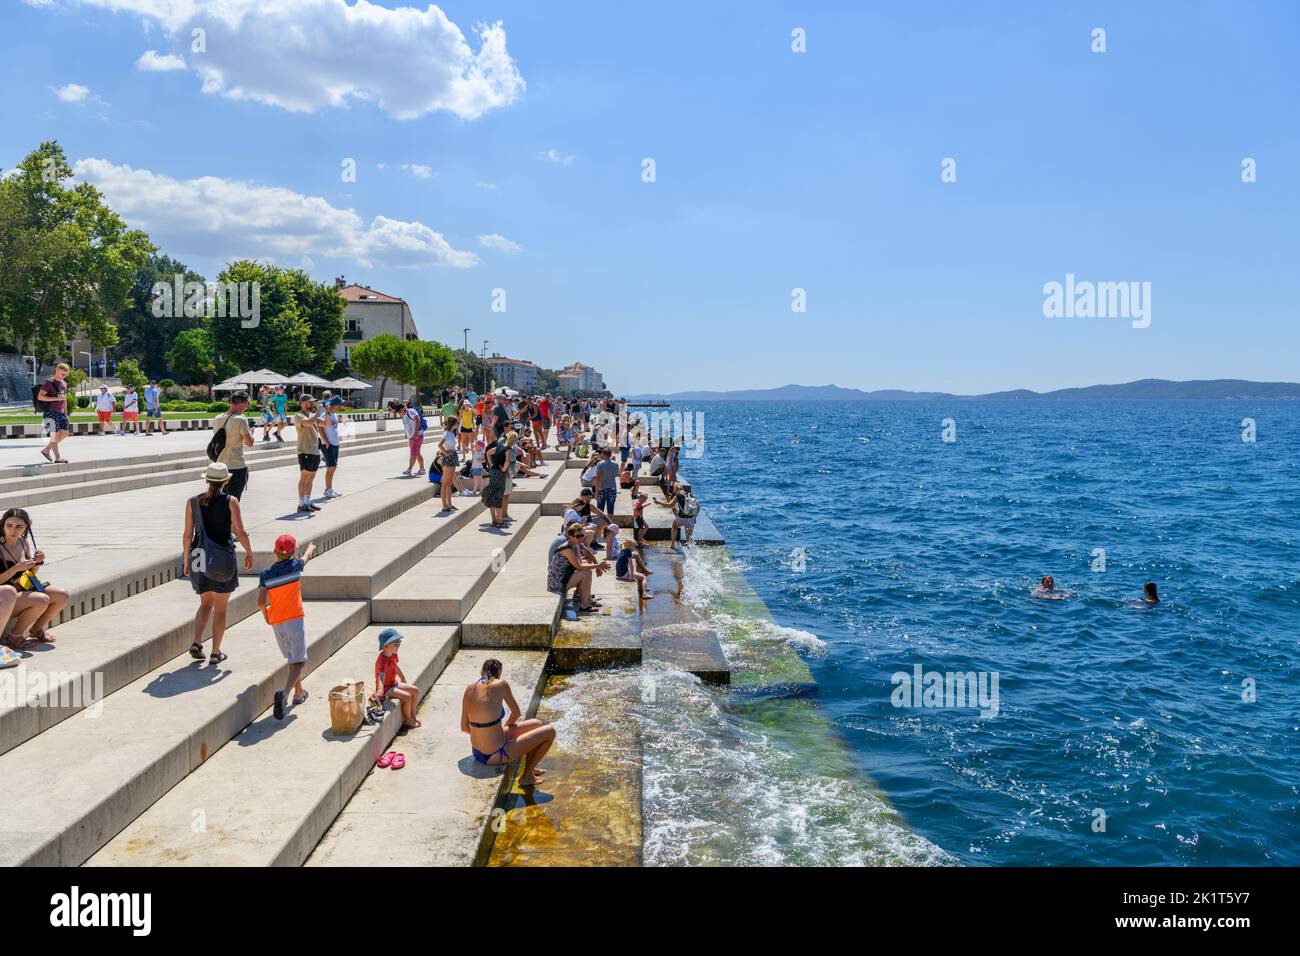 The Sea Organ on the seafront in Zadar, Croatia Stock Photo